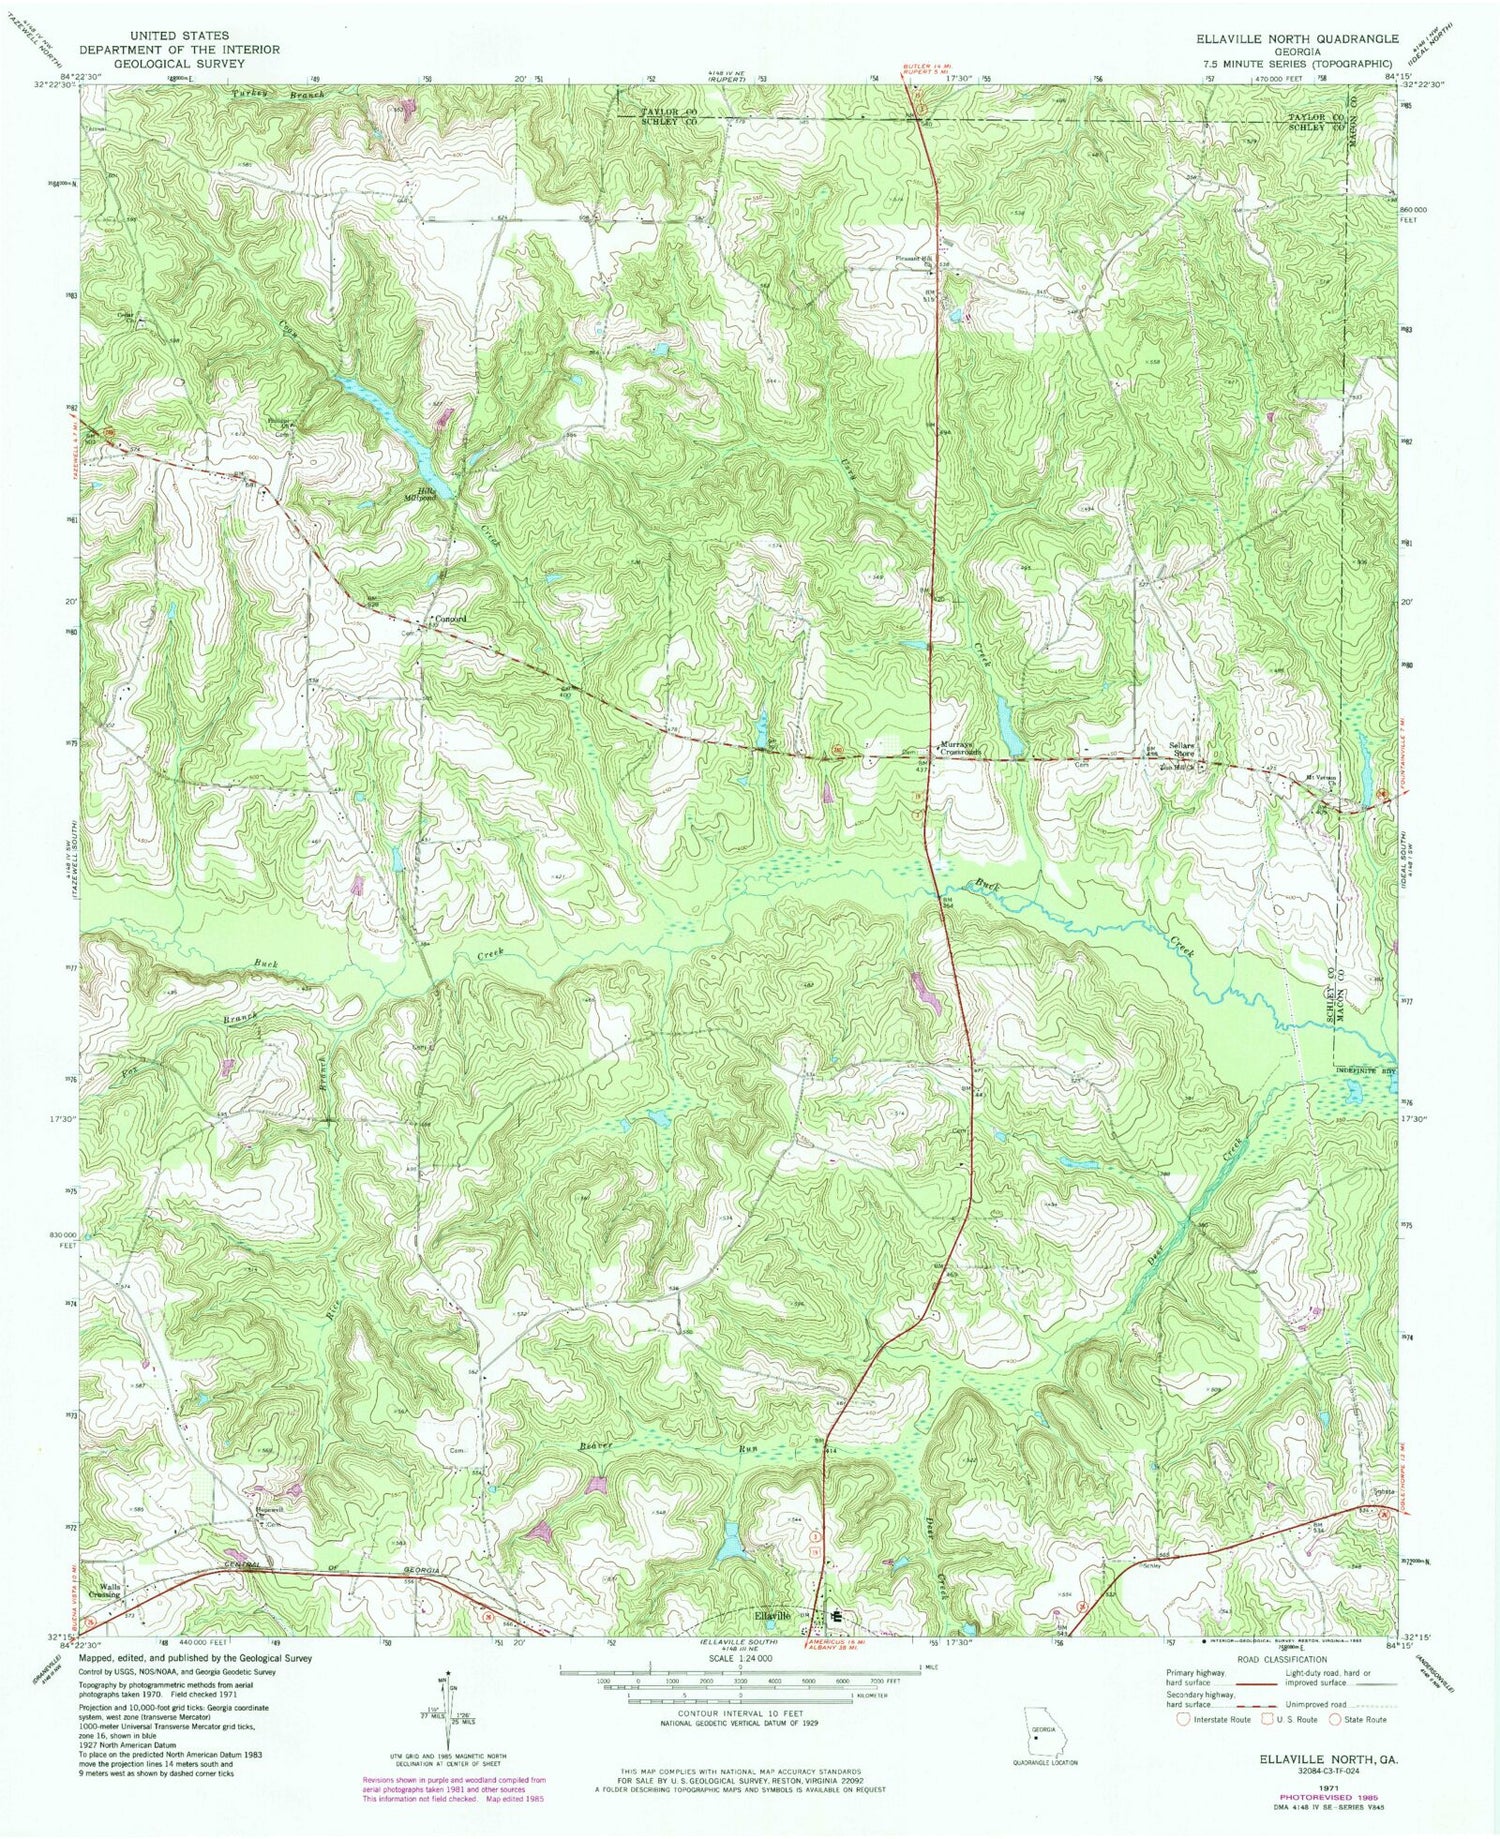 Classic USGS Ellaville North Georgia 7.5'x7.5' Topo Map Image